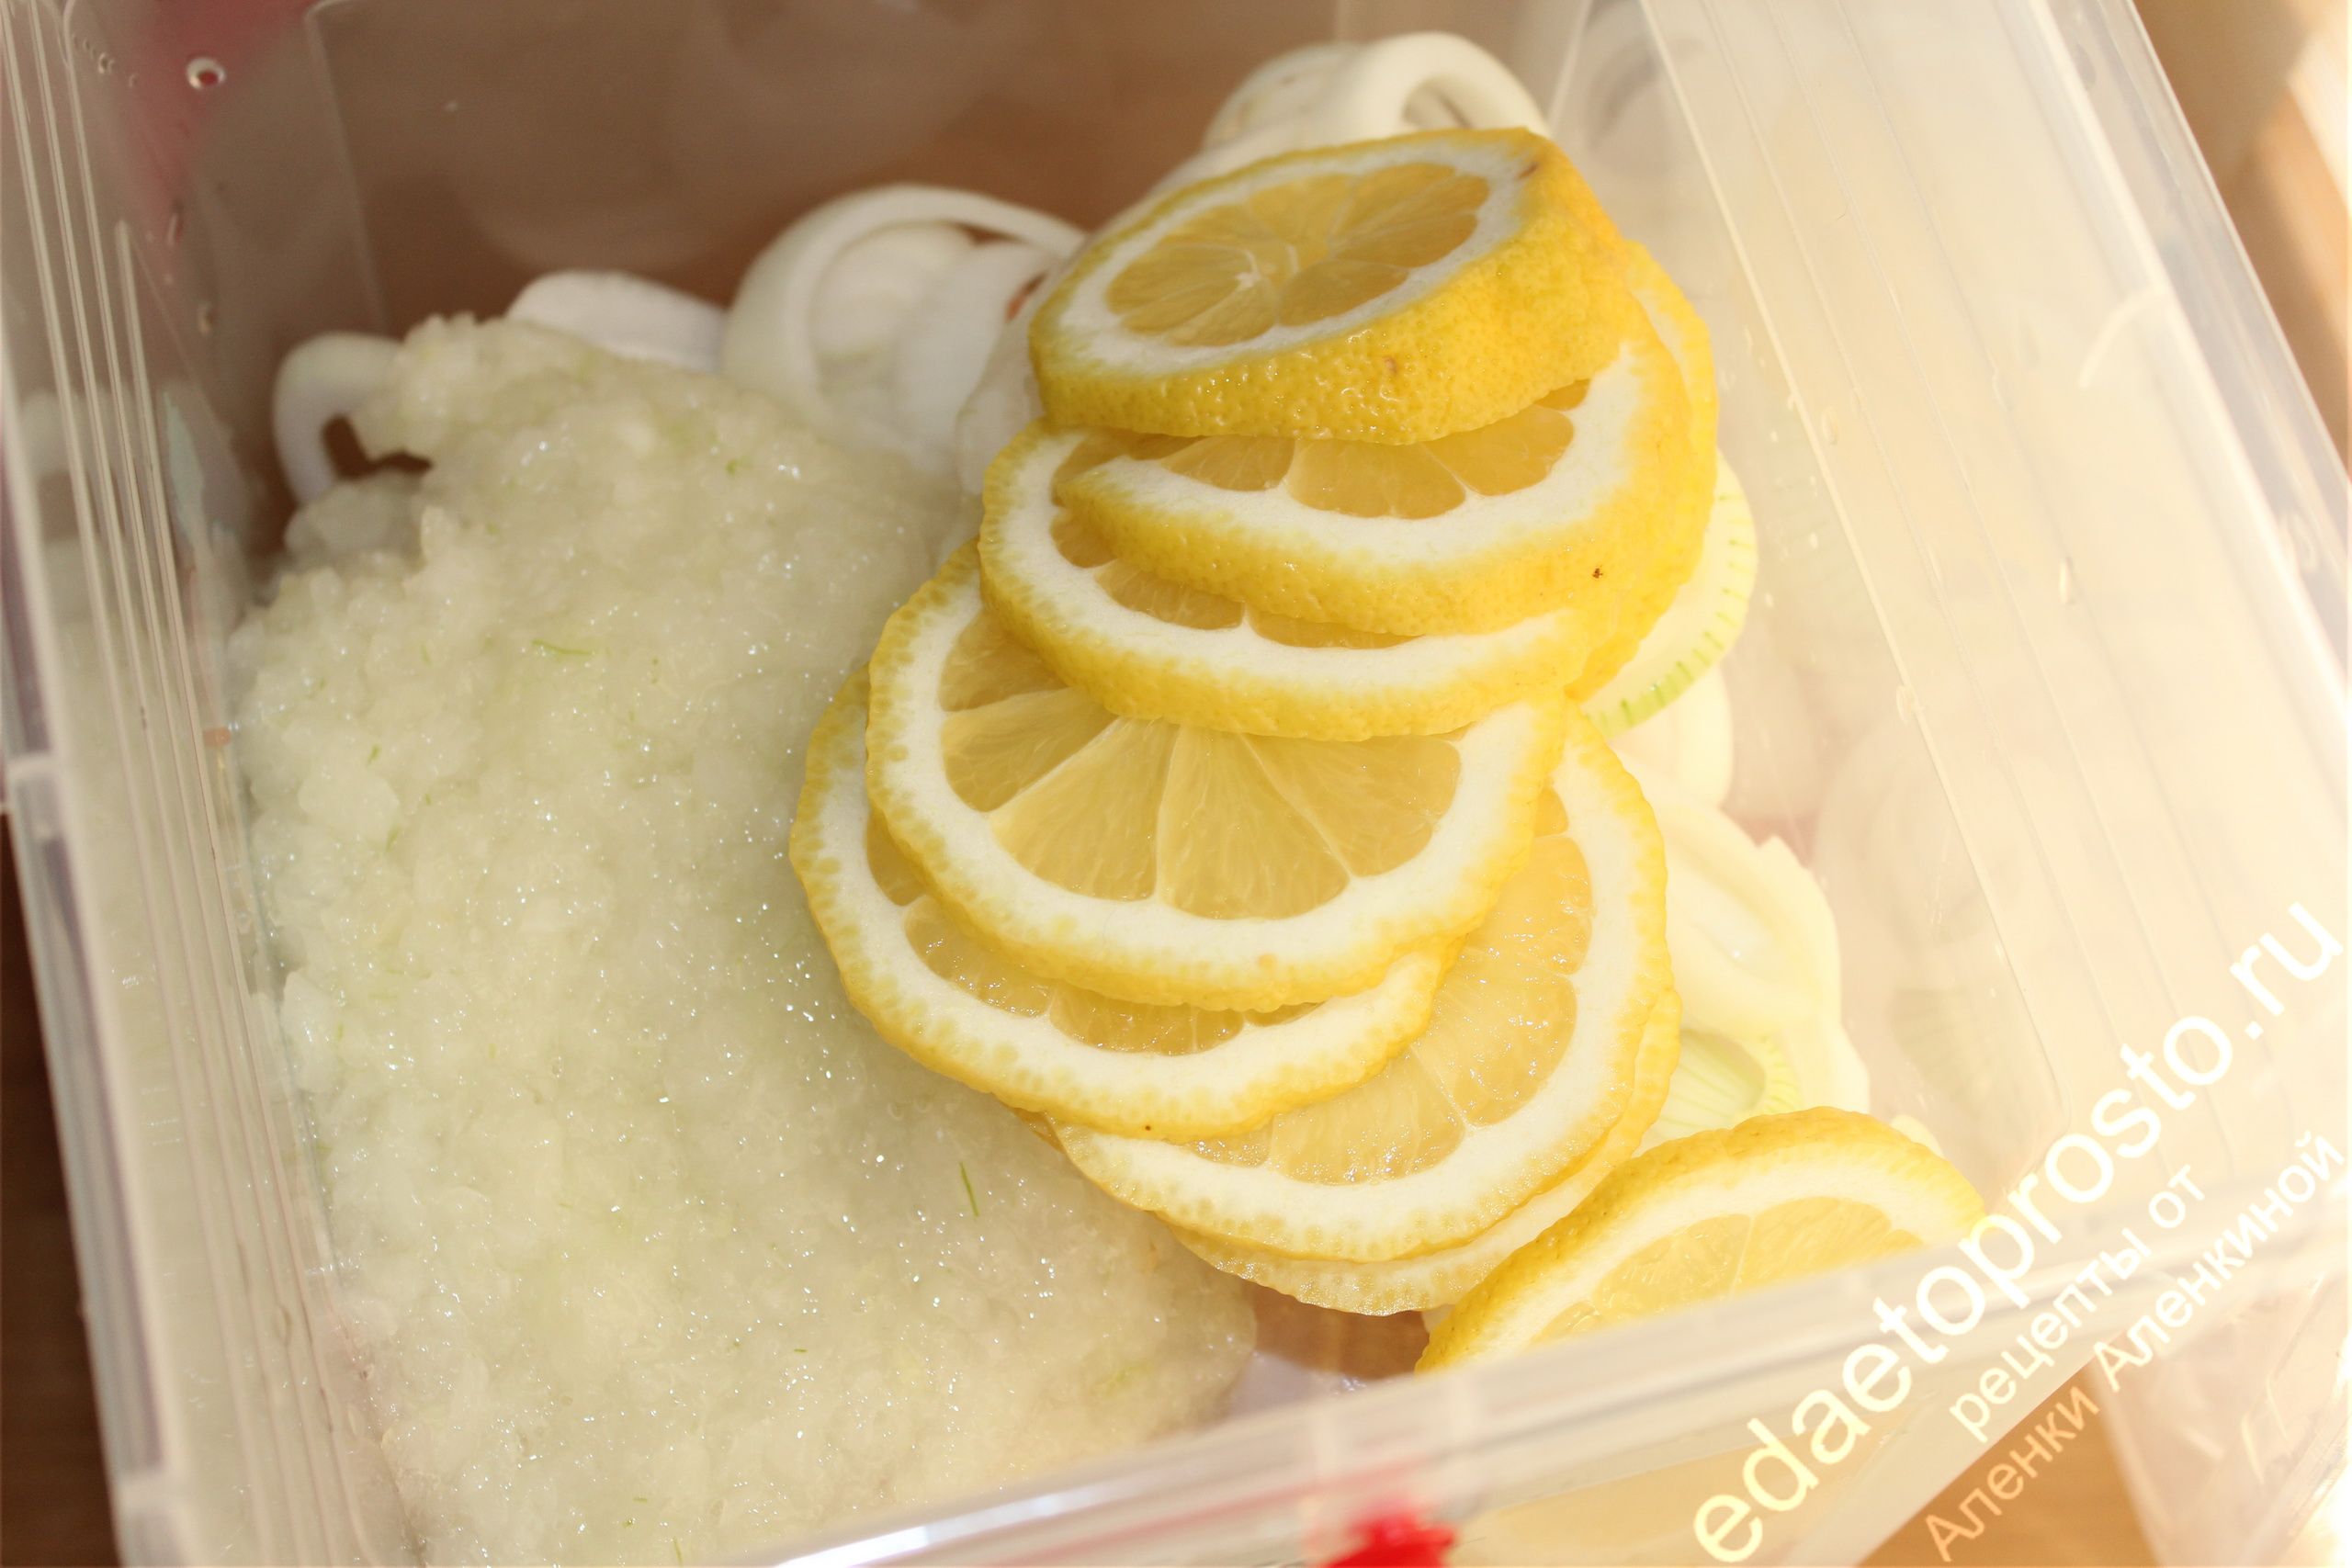 лук и лимон для маринования шашлыка, фото шашлыков 4